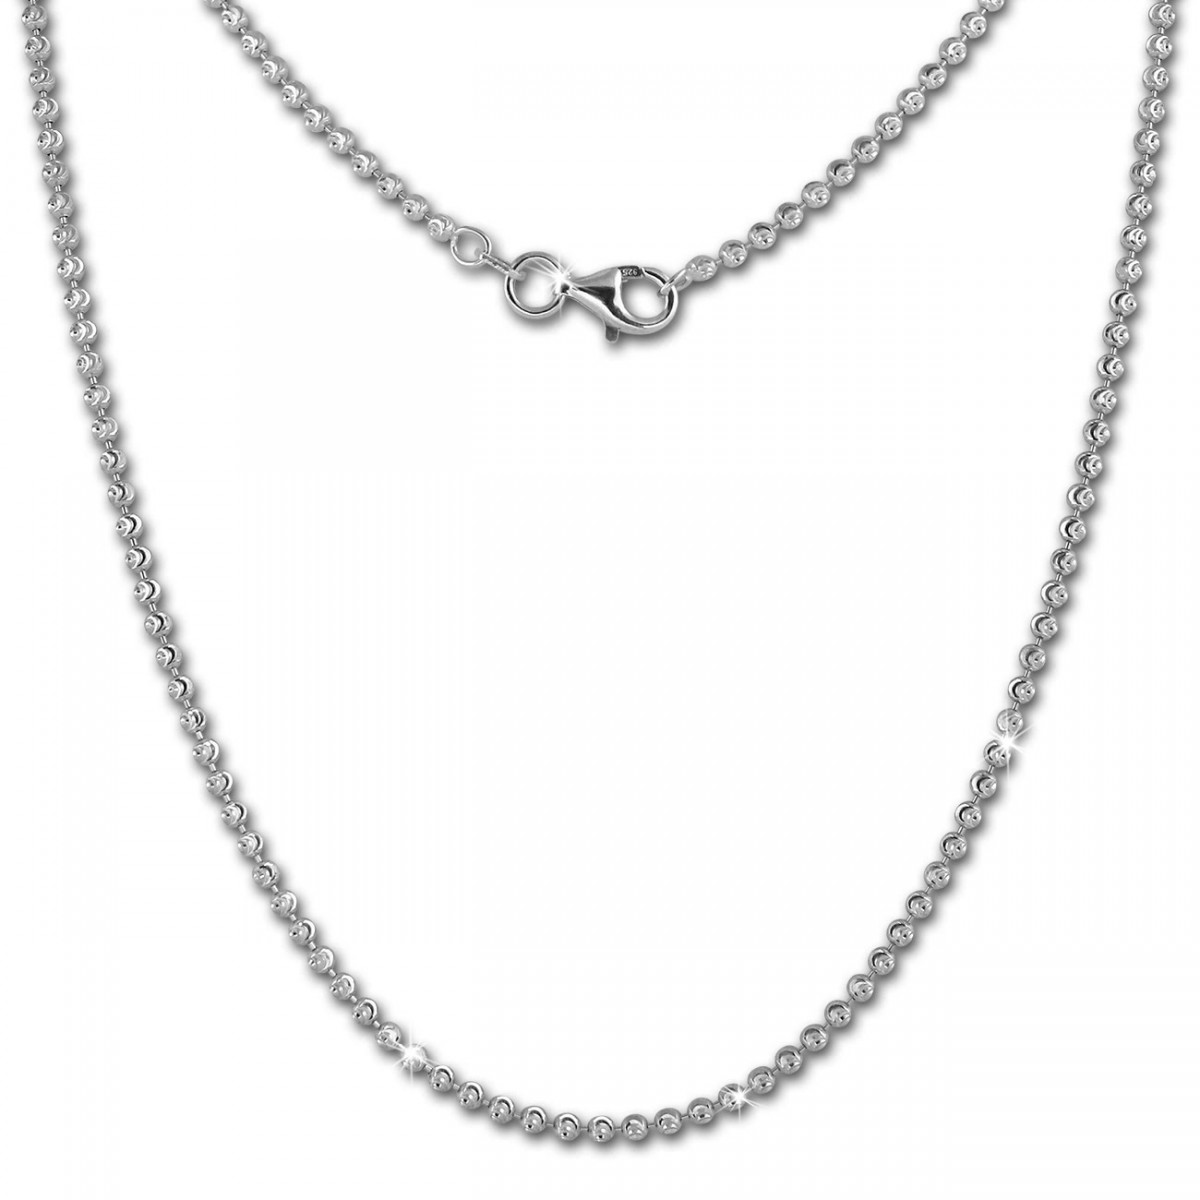 Avesano Kugelkette in 925 Sterling Silber für Frauen diamantiert Breite 2 mm Länge 42 45 50 60 70 80 90 cm Damenkette Silberkette ohne Anhänger 101061-0 